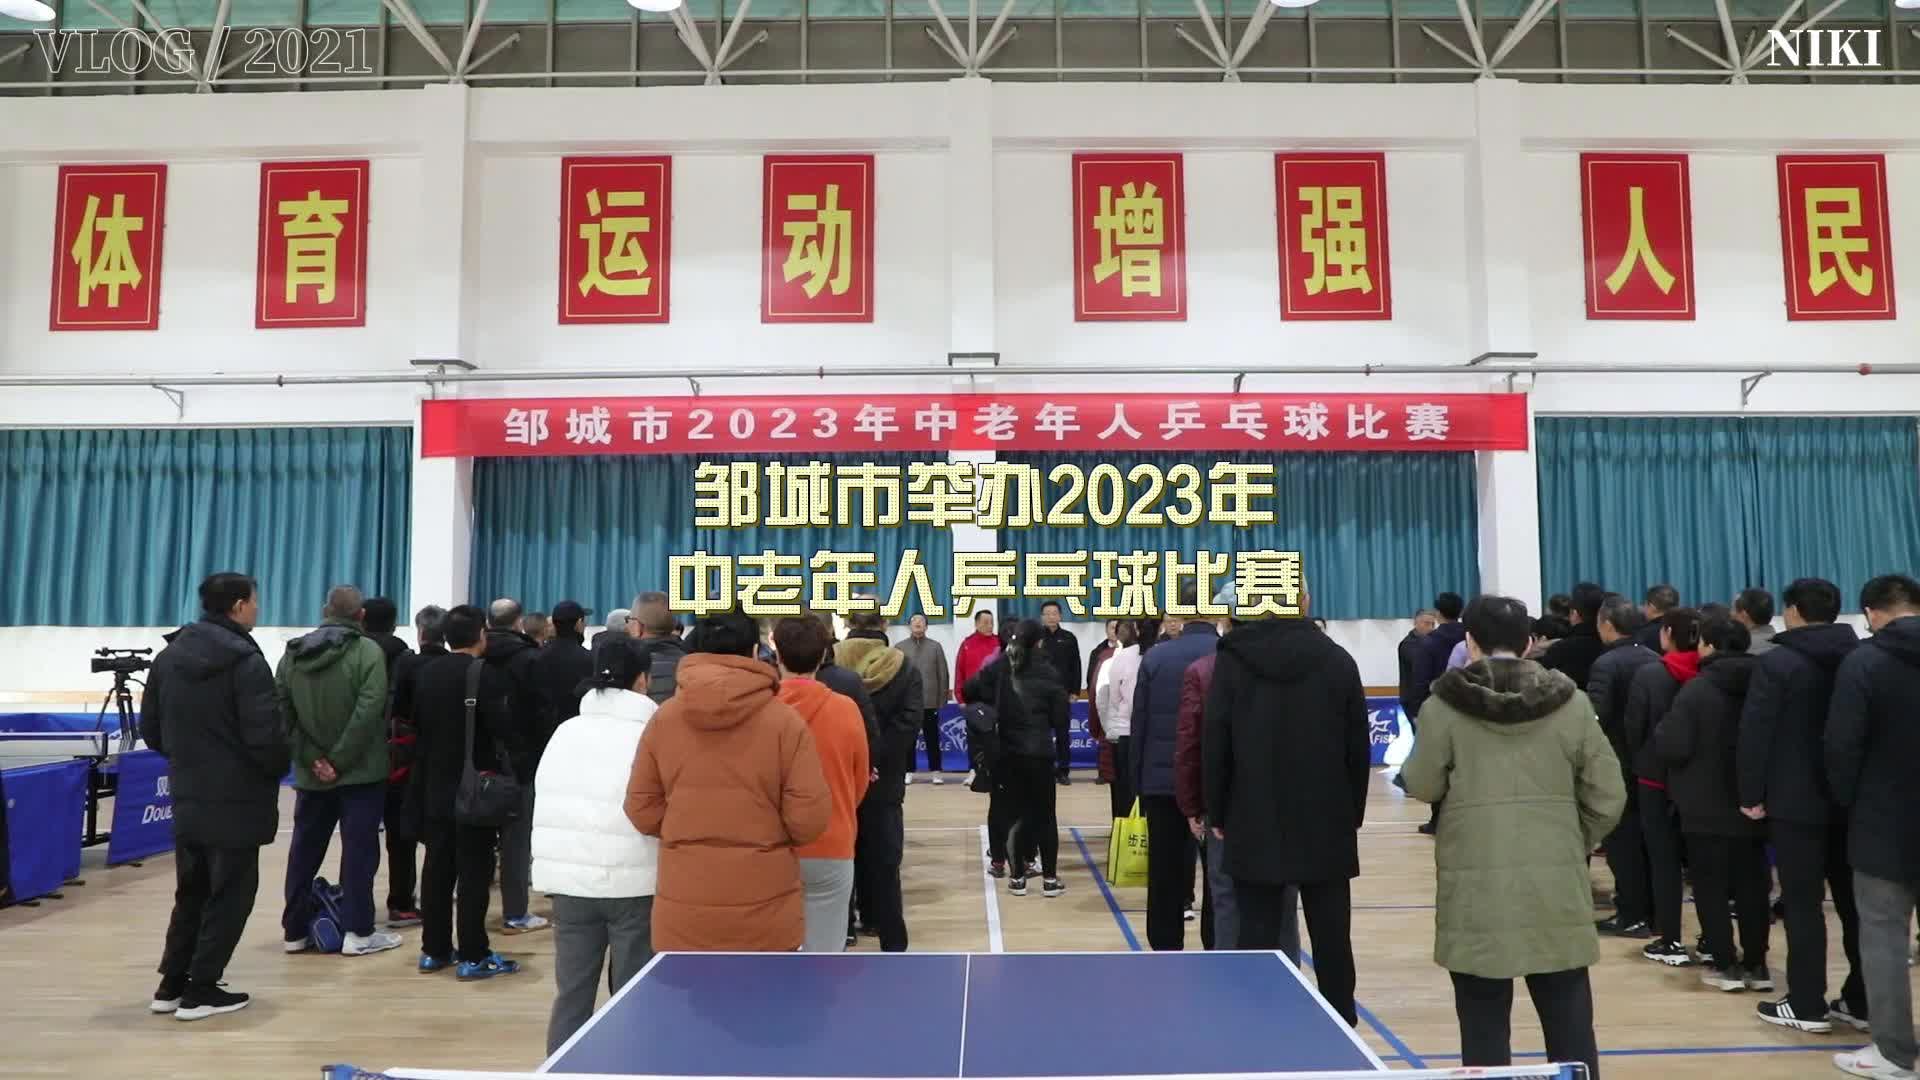 【邹视频·新闻】21秒 | 邹城市举办2023年中老年人乒乓球比赛